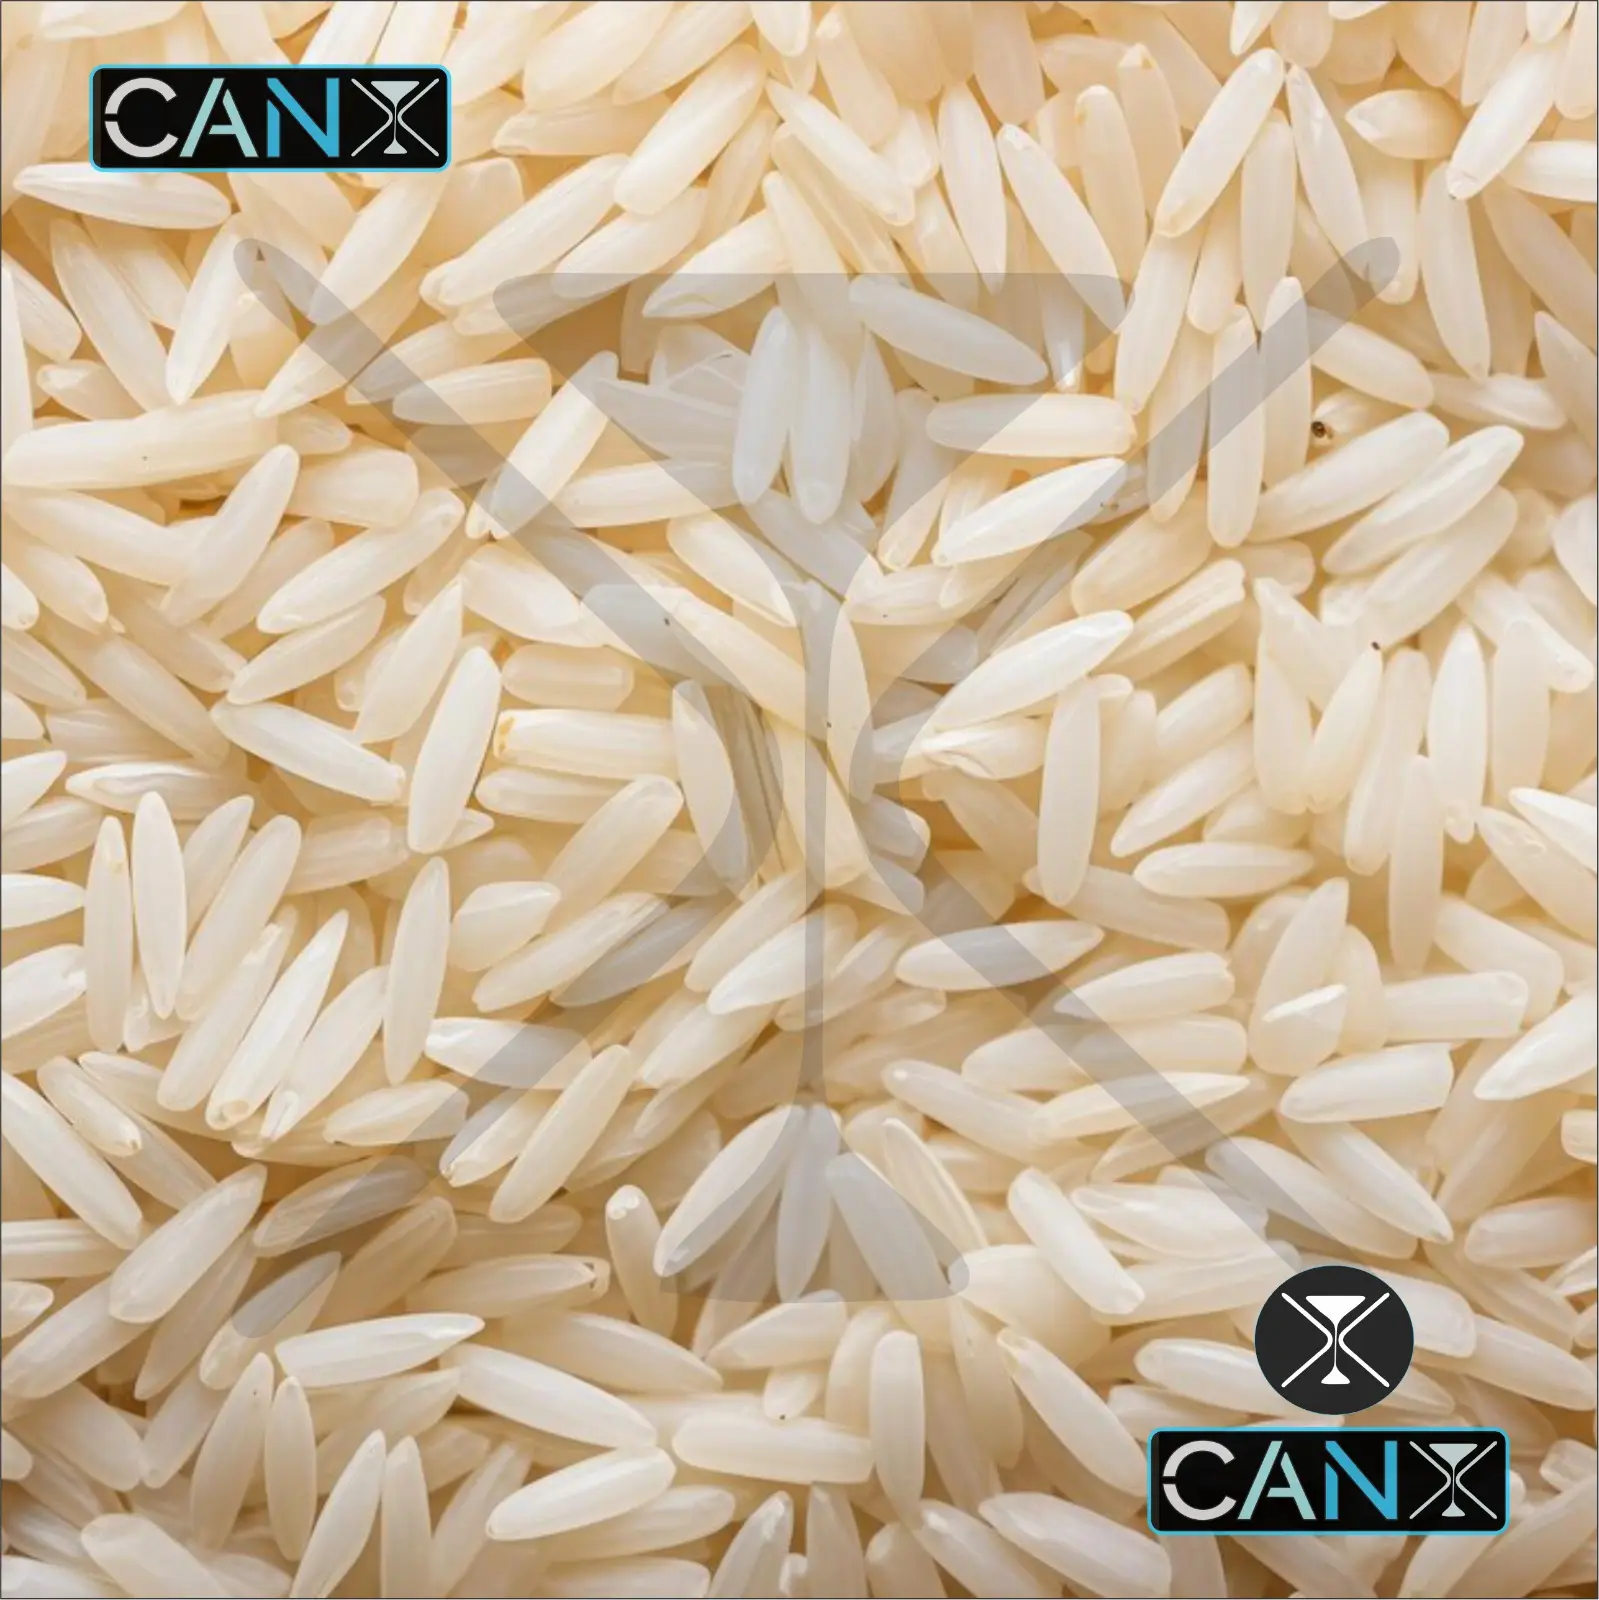 Vente chaude qualité d'exportation 1121 riz basmati blanc Sella disponible auprès du fournisseur indien